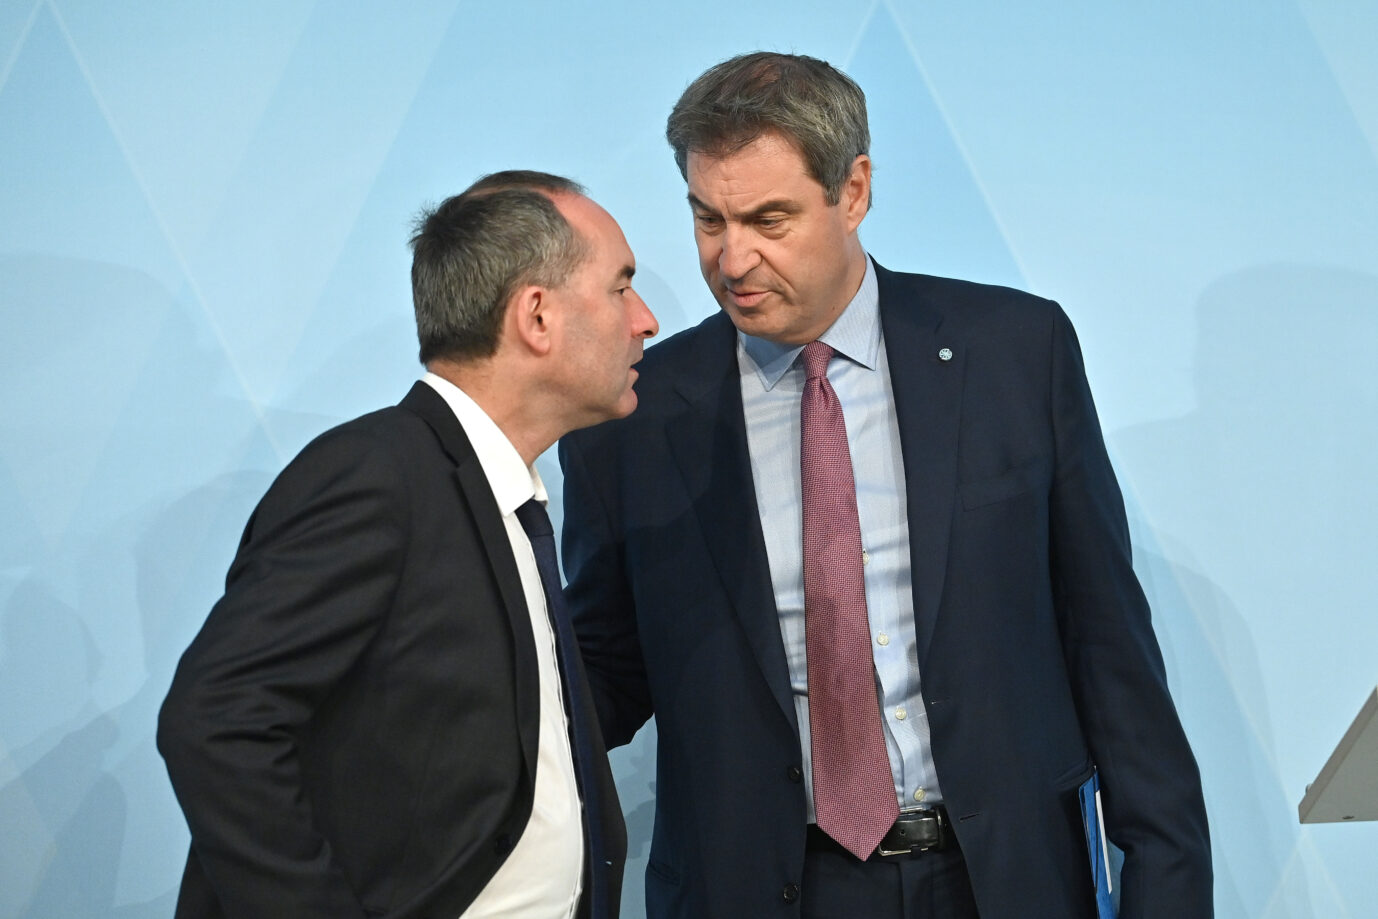 Ministerpräsident Markus Söder (CSU) legt die Hand auf den Arm von Wirtschaftsminister Hubert Aiwanger (Freie Wähler)